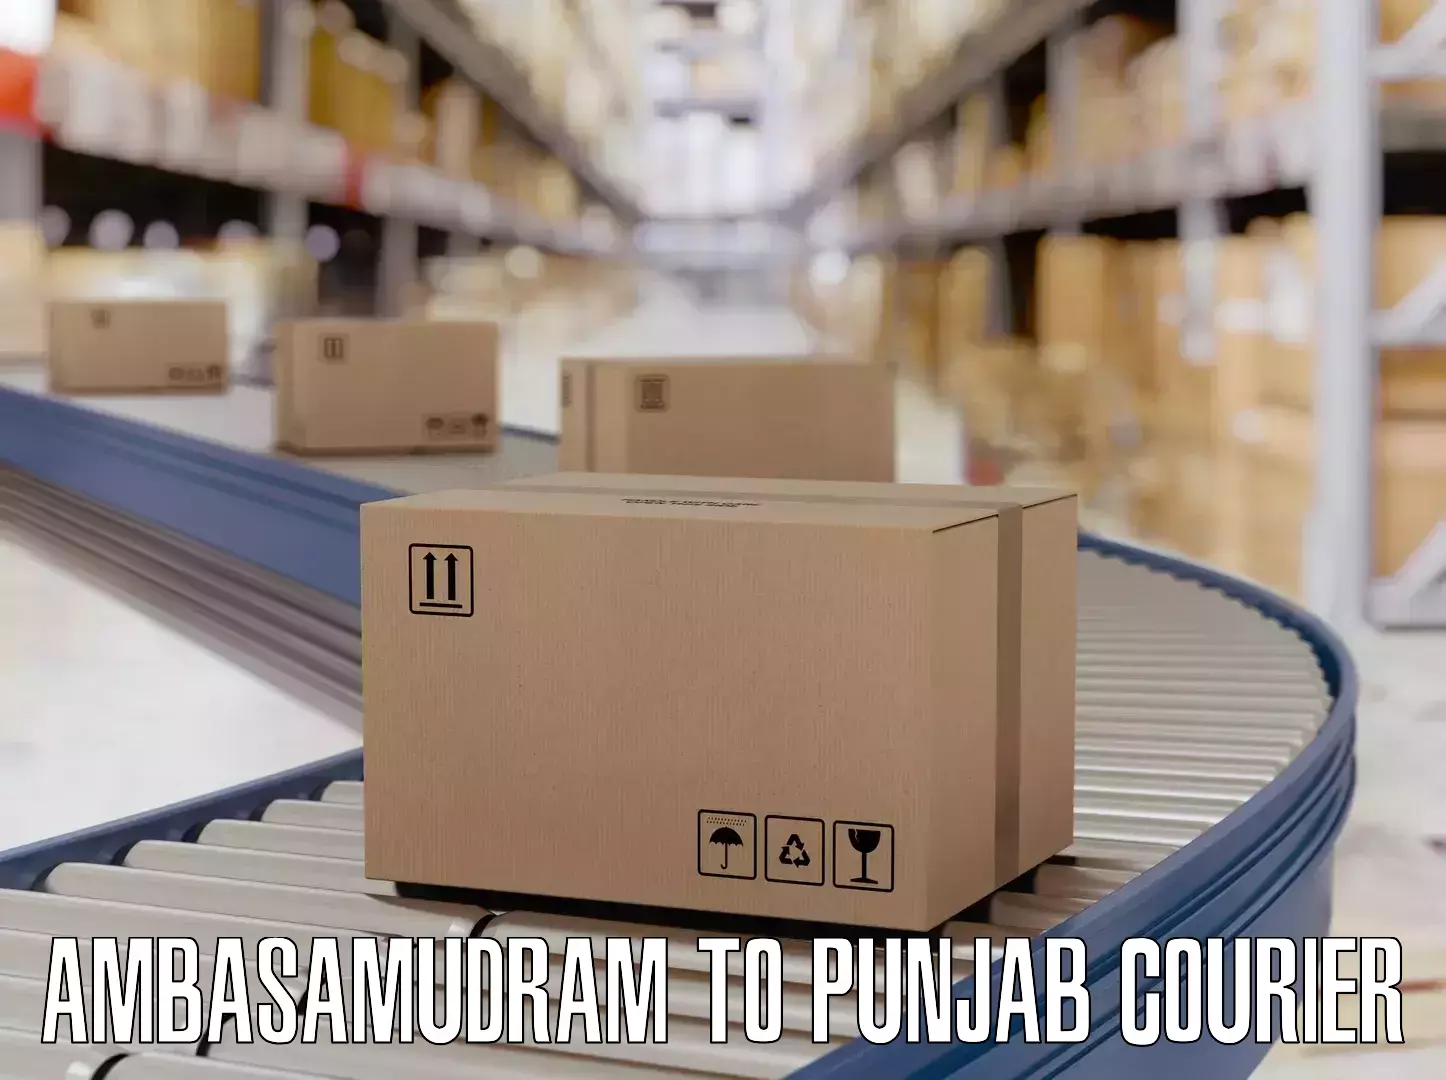 Artwork baggage courier Ambasamudram to Punjab